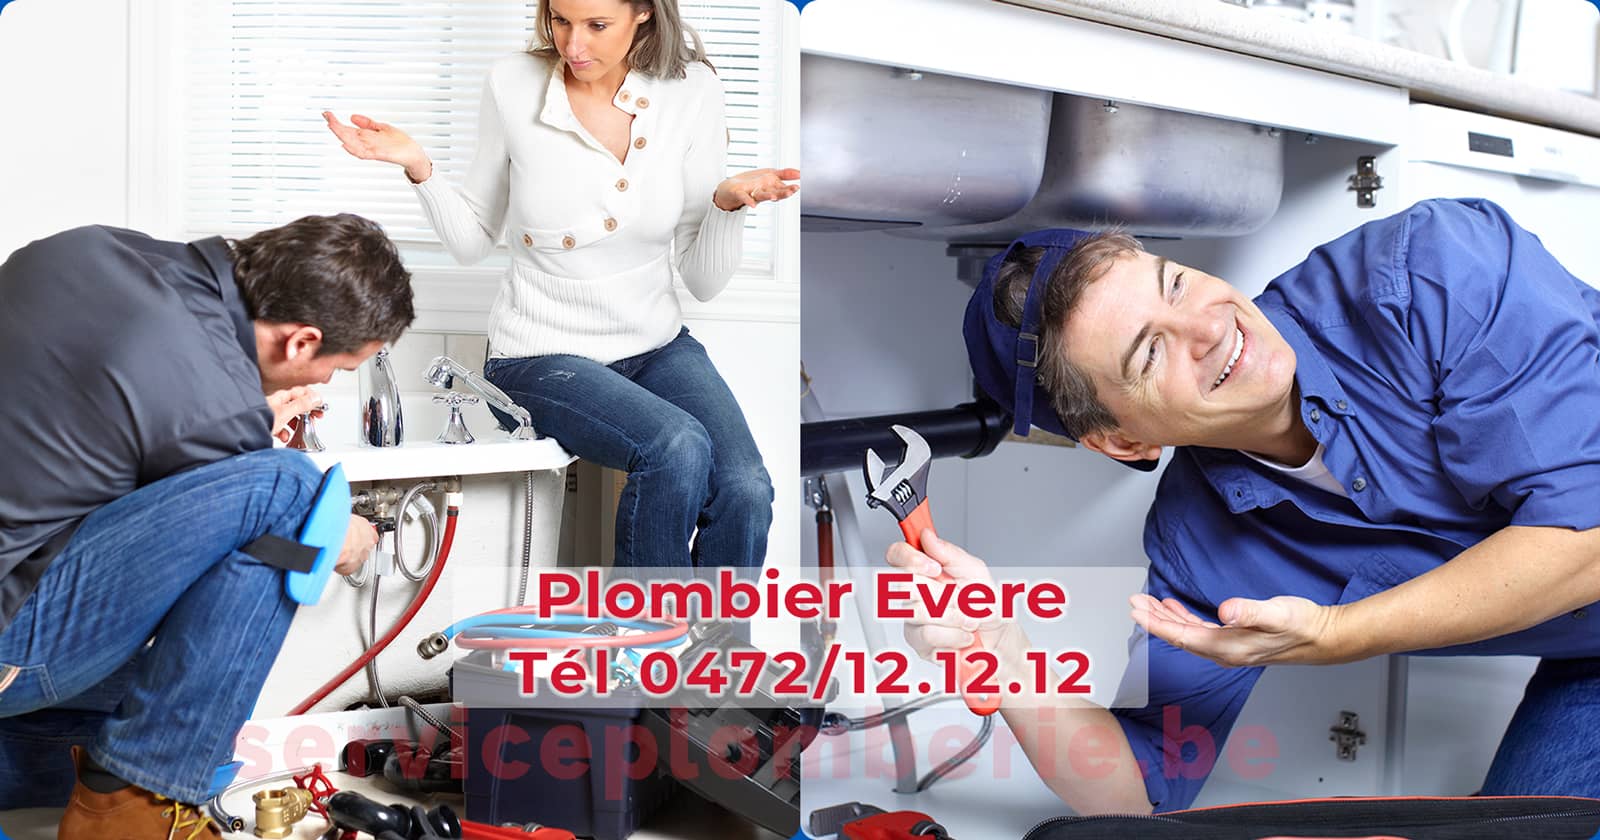 Plombier Evere Agréé Professionnel Service Plomberie Tél 0472/12.12.12